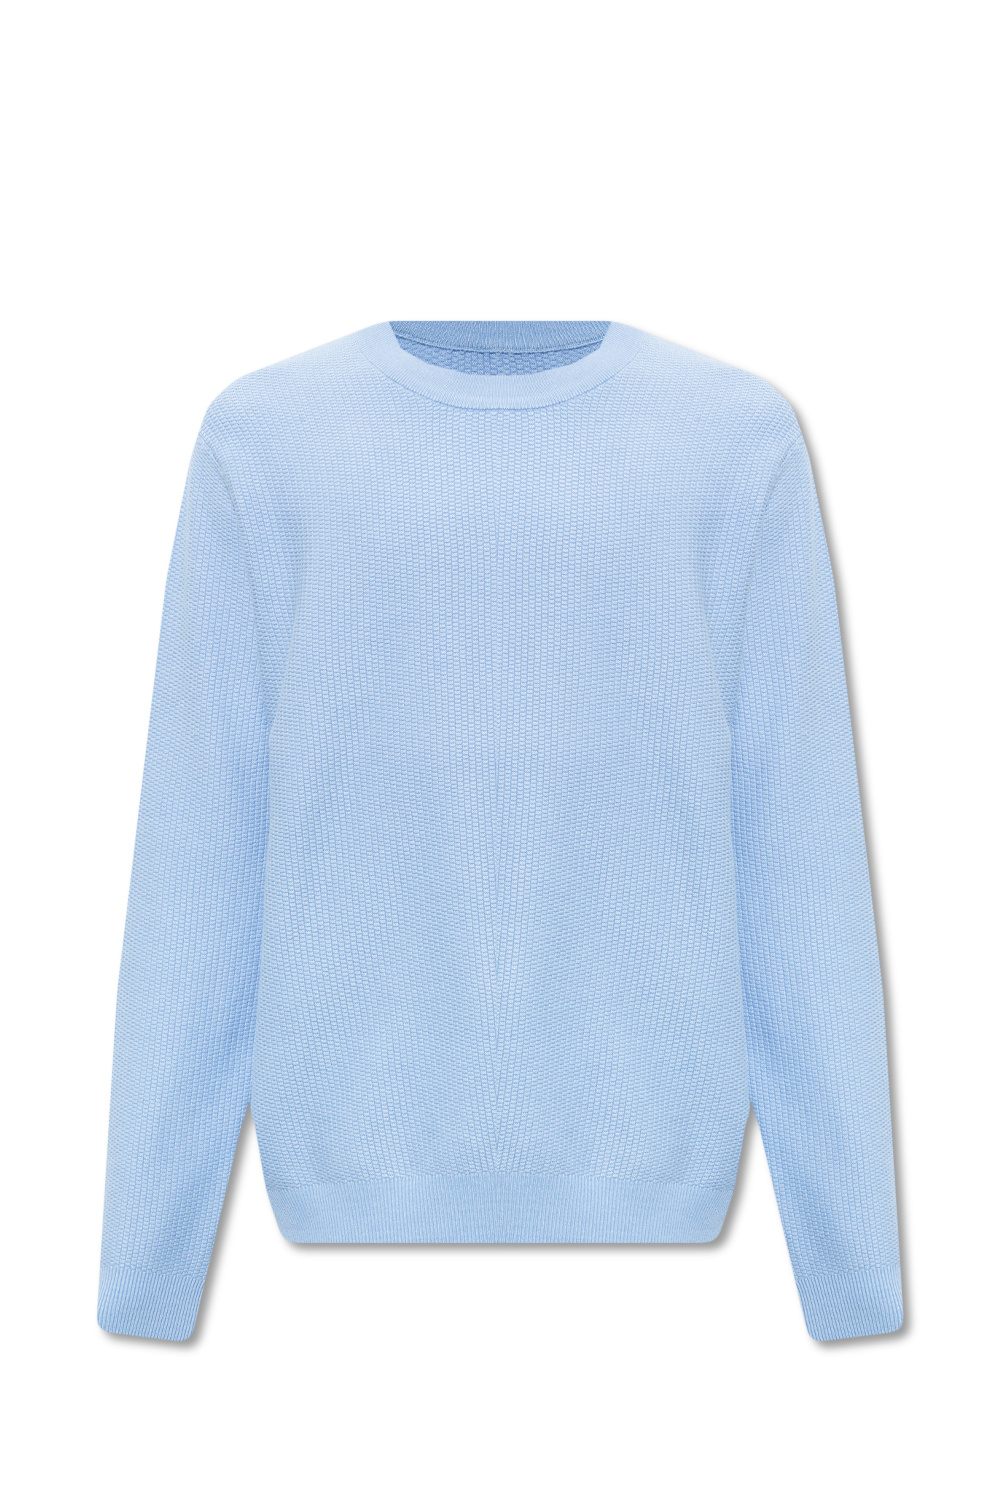 Samsøe Samsøe ‘Garam’ sweater